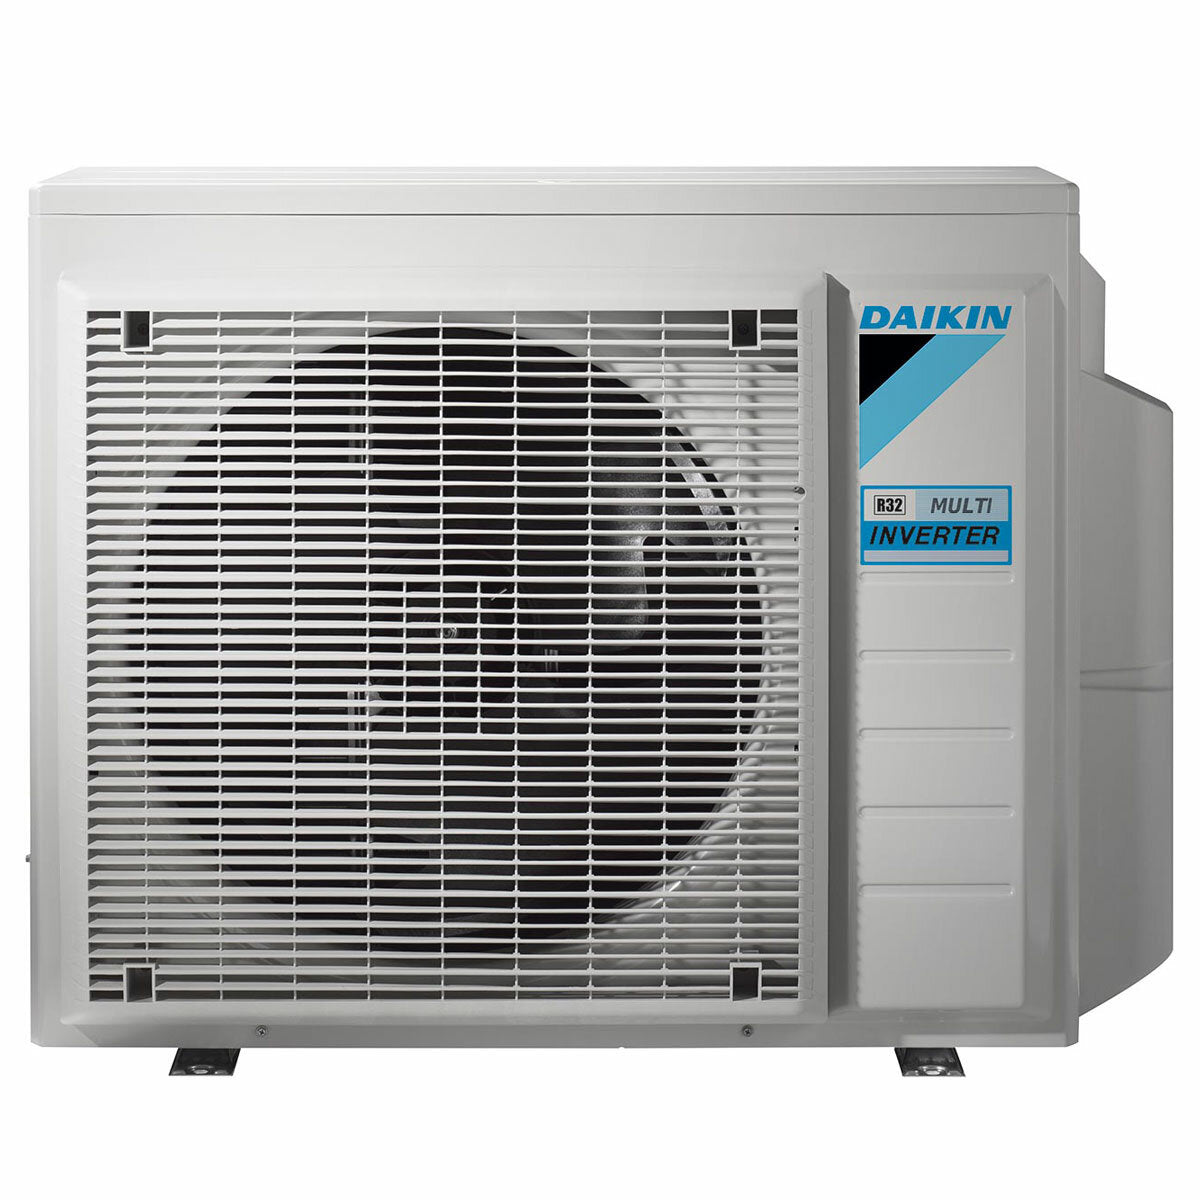 Daikin Emura air conditioner 3 split panels 7000 + 9000 + 9000 + 12000 BTU inverter A + wifi outdoor unit 6.8 kW Black